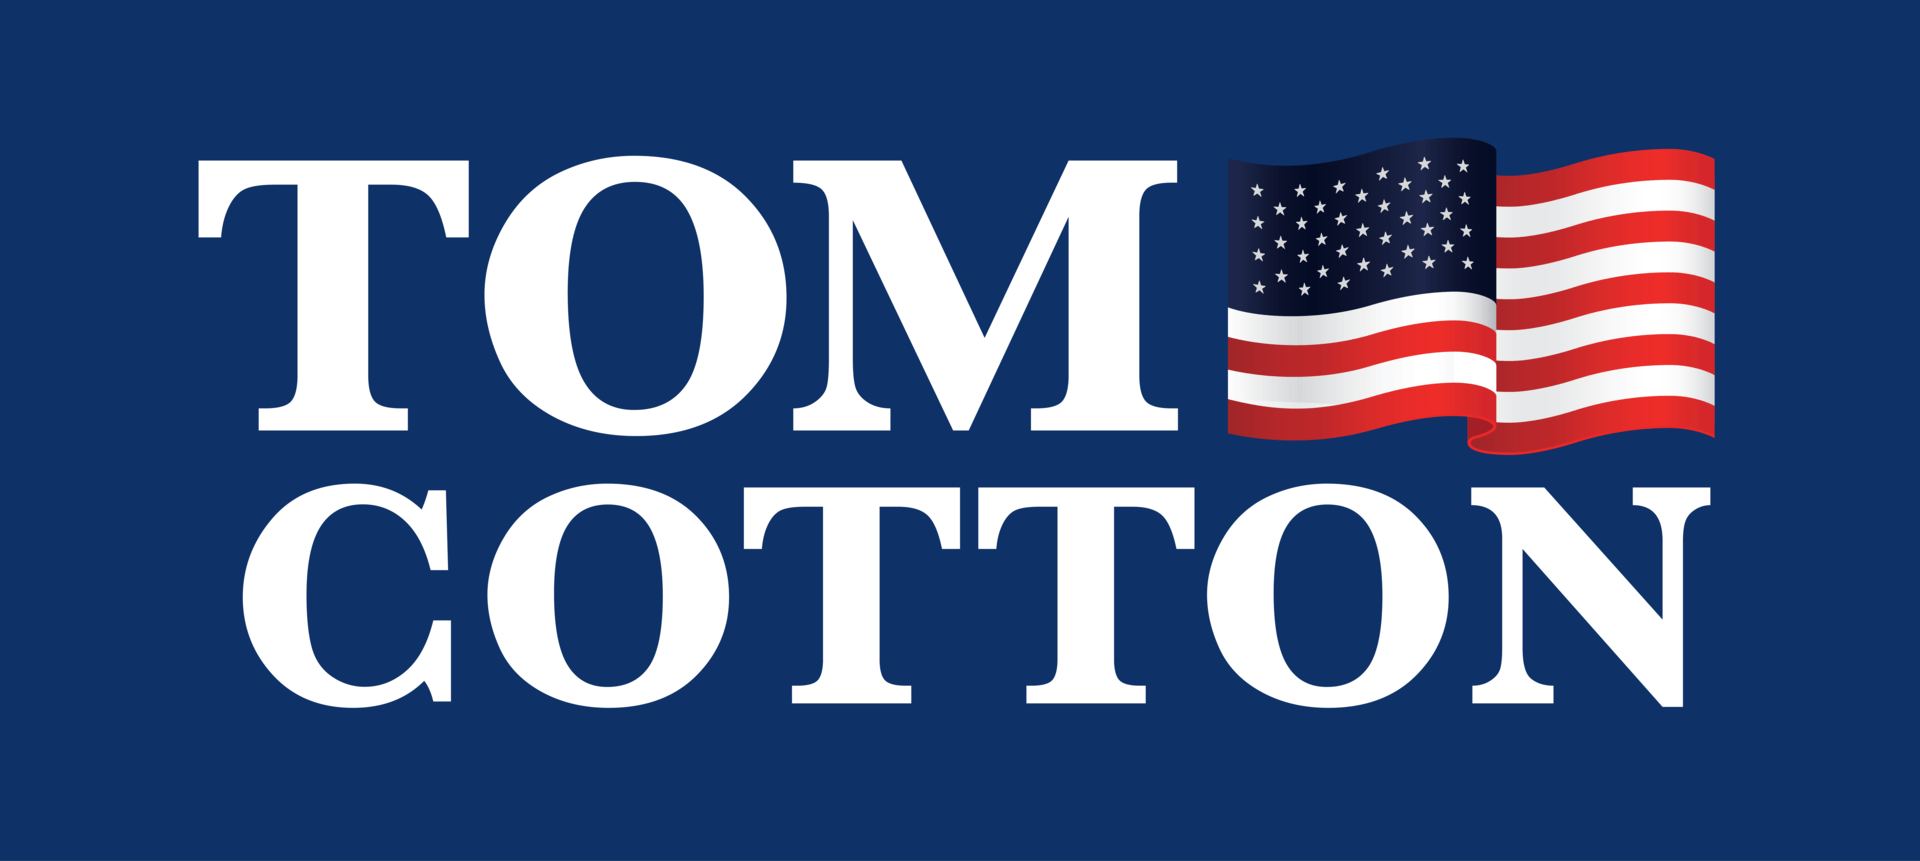 2019 cotton logo blue final